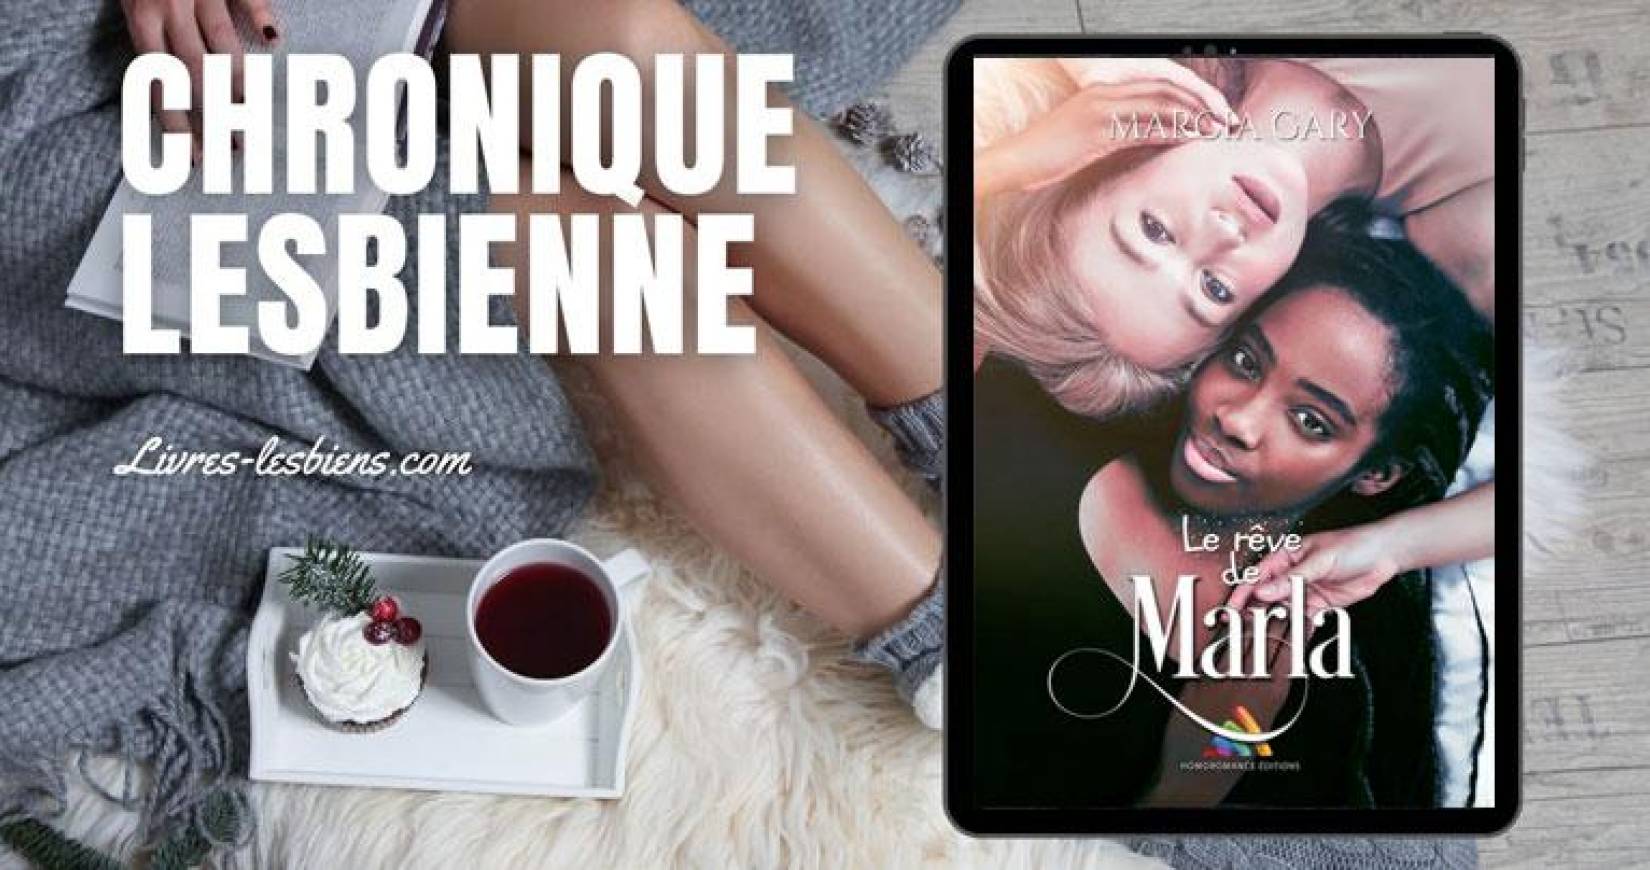 a8ca9db899cbb6ed1be4a9e86f4051c4 Lesbia Magazine | News lesbiennes françaises